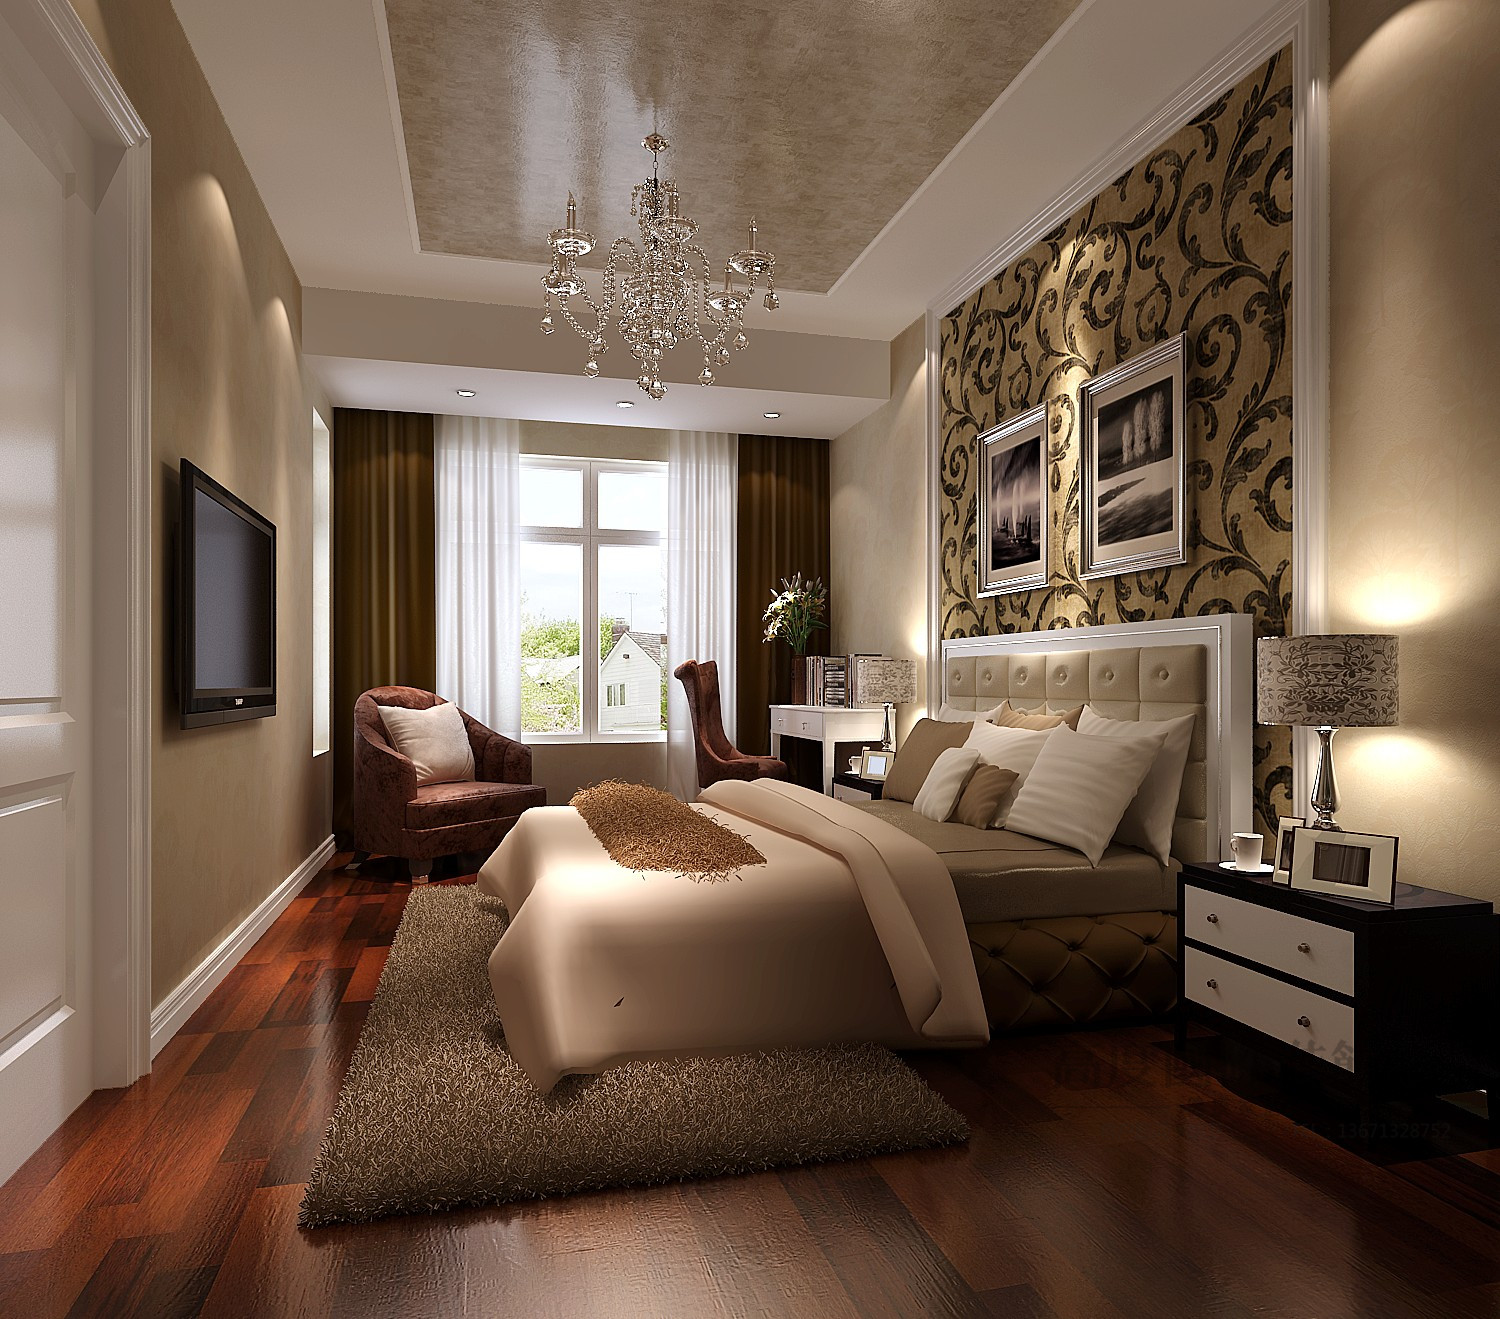 简约 欧式 效果图 设计案例 卧室图片来自高度国际设计装饰在k2海棠湾简欧风格设计案例的分享